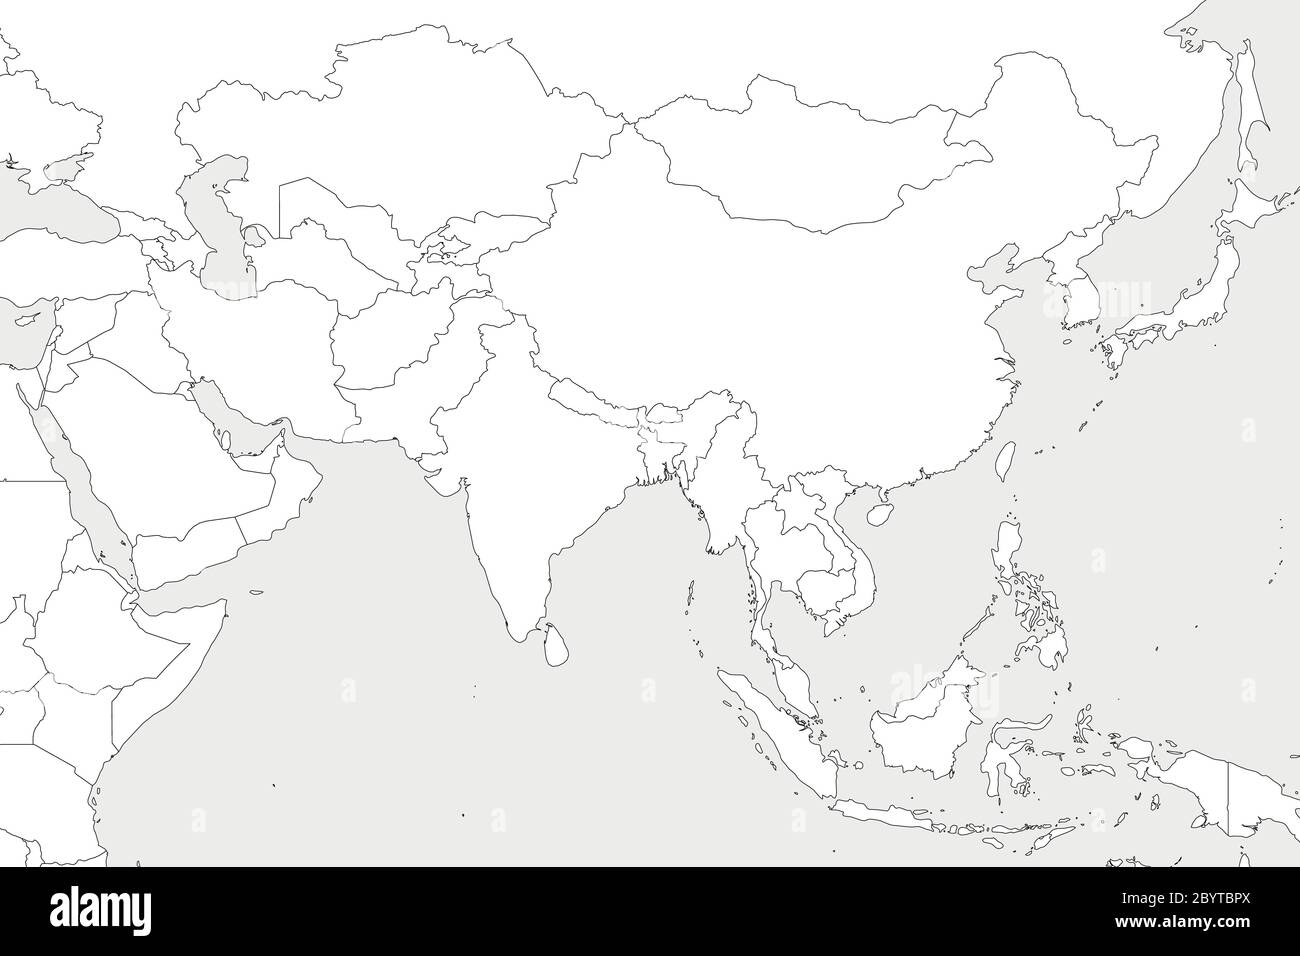 Mappa politica vuota dell'Asia occidentale, meridionale e orientale. Bordi sottili neri su sfondo grigio chiaro. Illustrazione vettoriale. Illustrazione Vettoriale